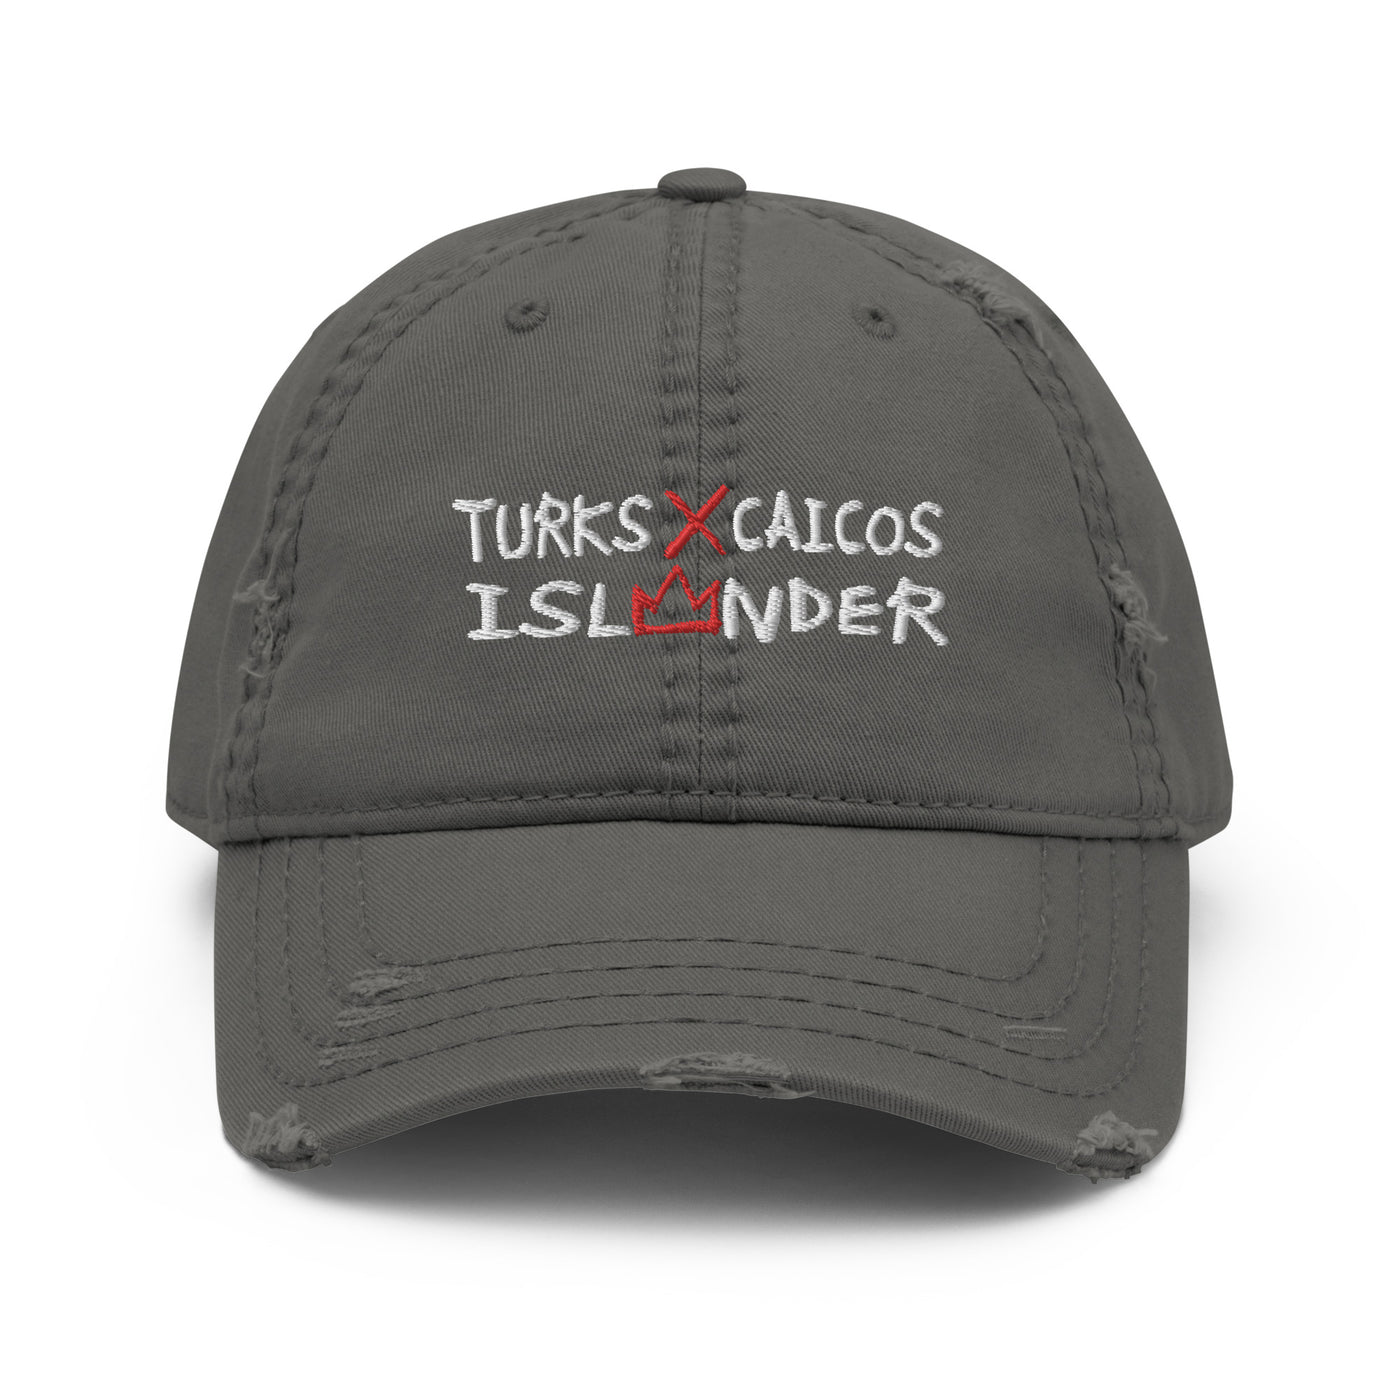 Turks X Caicos Islander Distressed Dad Hat